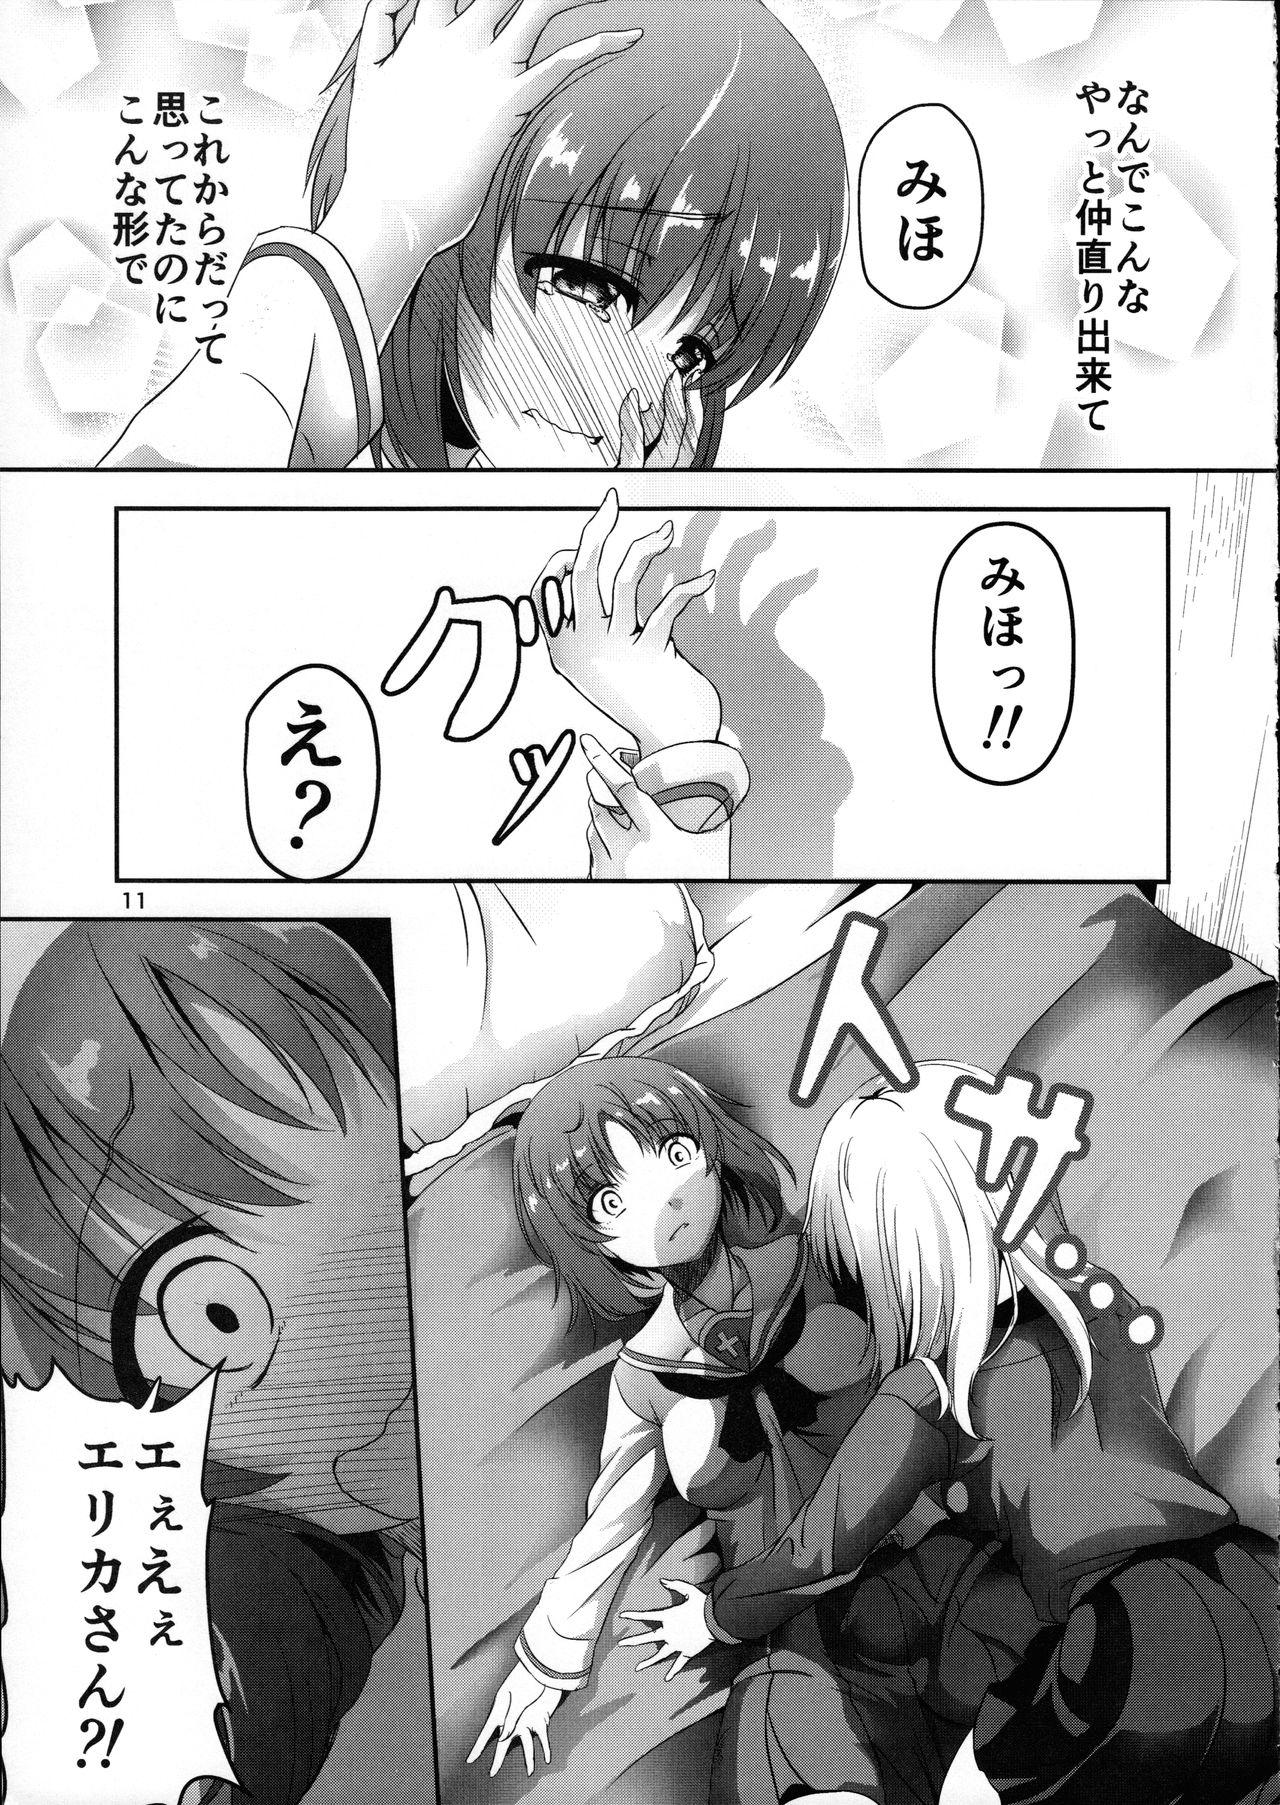 Bj (C91) [Pandora Box (Hakomaru.)] Ankou no Noroi?! Miho-san ni Haechatta!? Ganbare Erika-san!! (Girls und Panzer) - Girls und panzer Hot Naked Women - Page 11